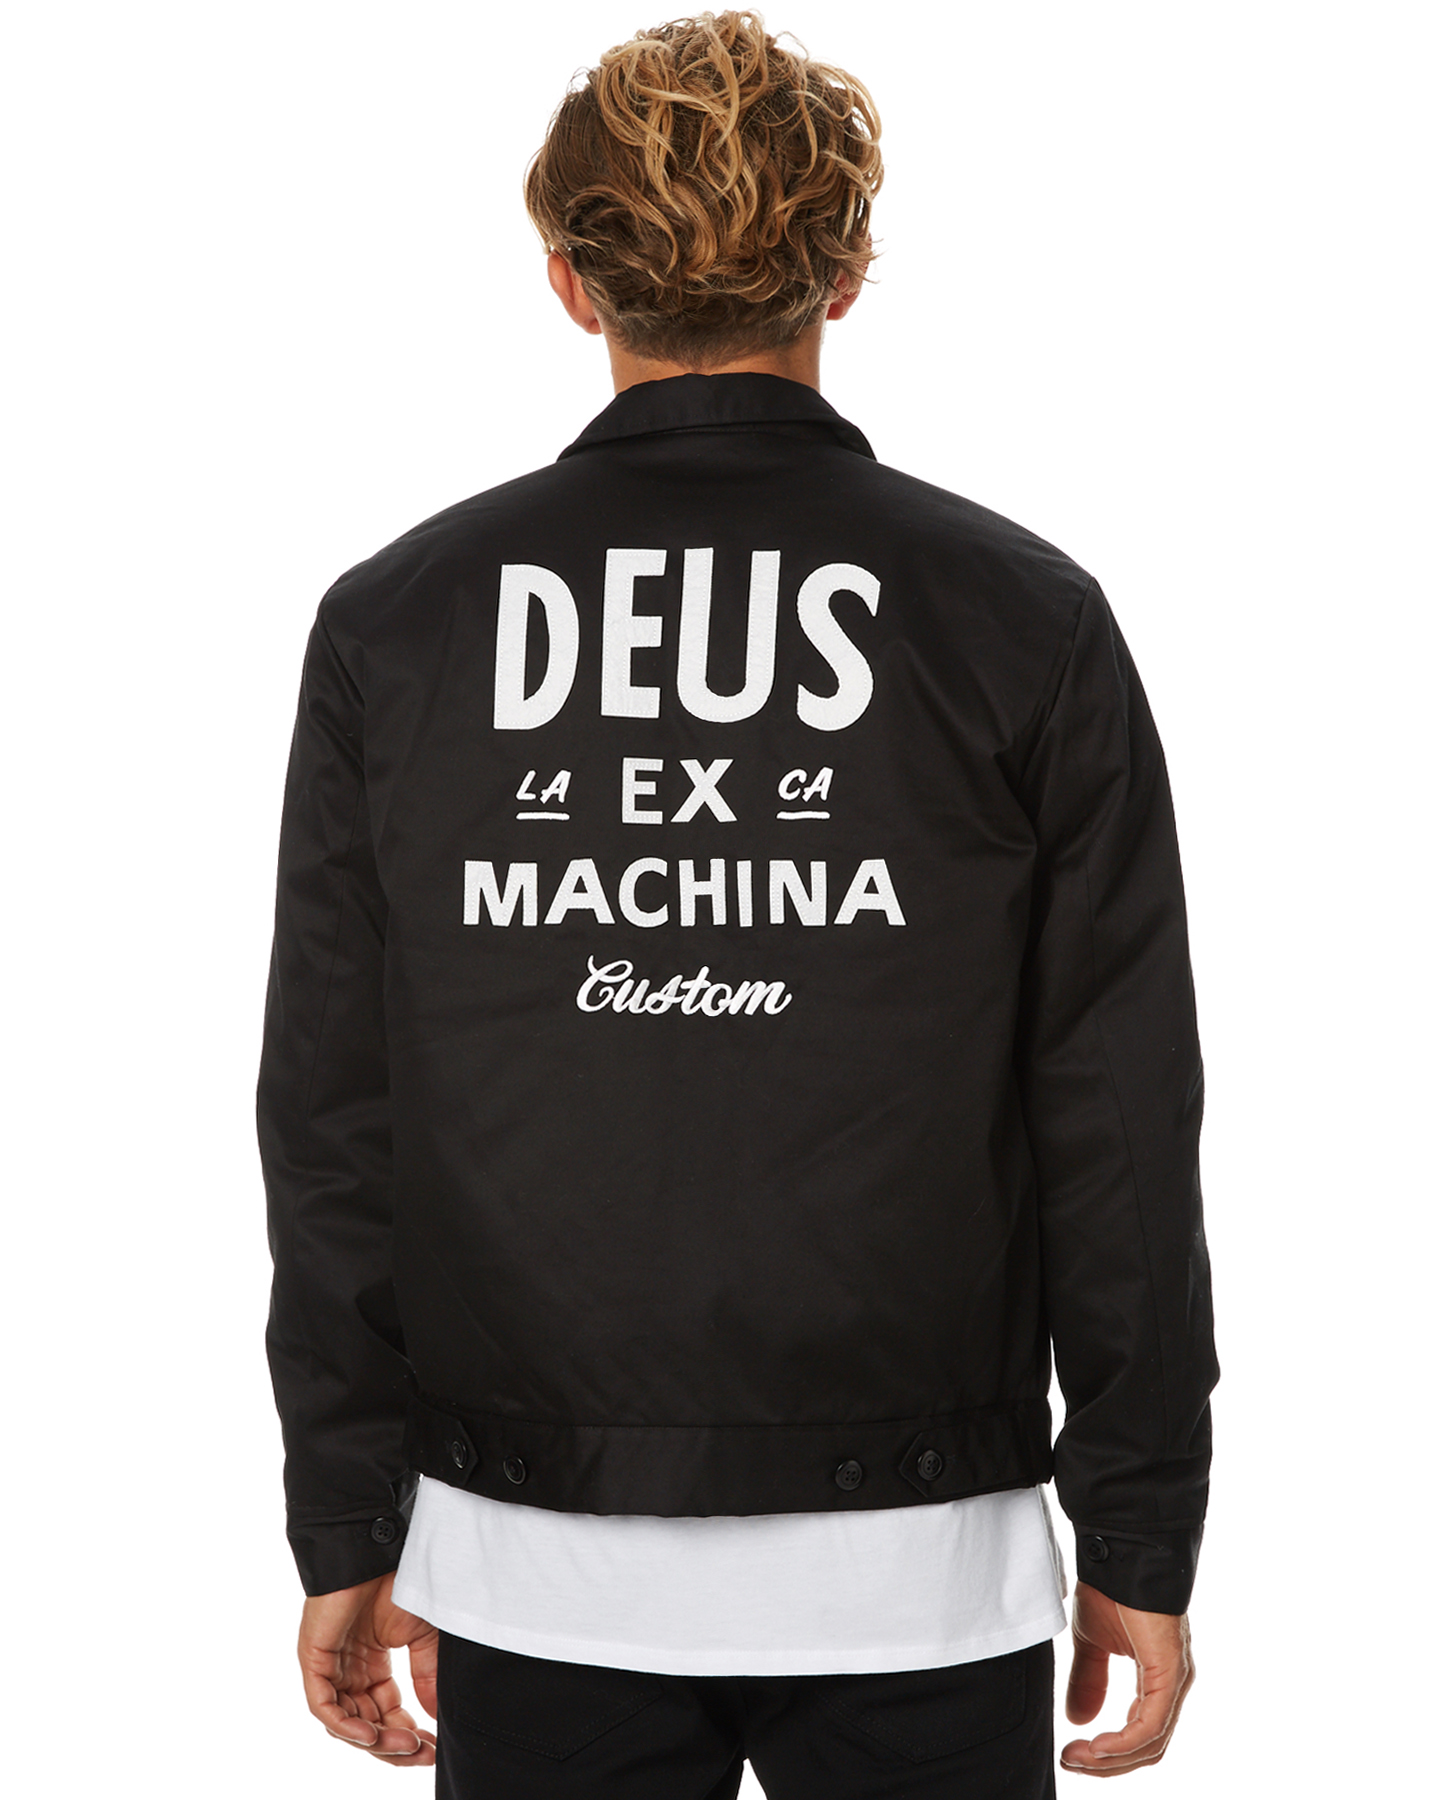  Deus Ex  Machina Workwear Jacket  Black SurfStitch